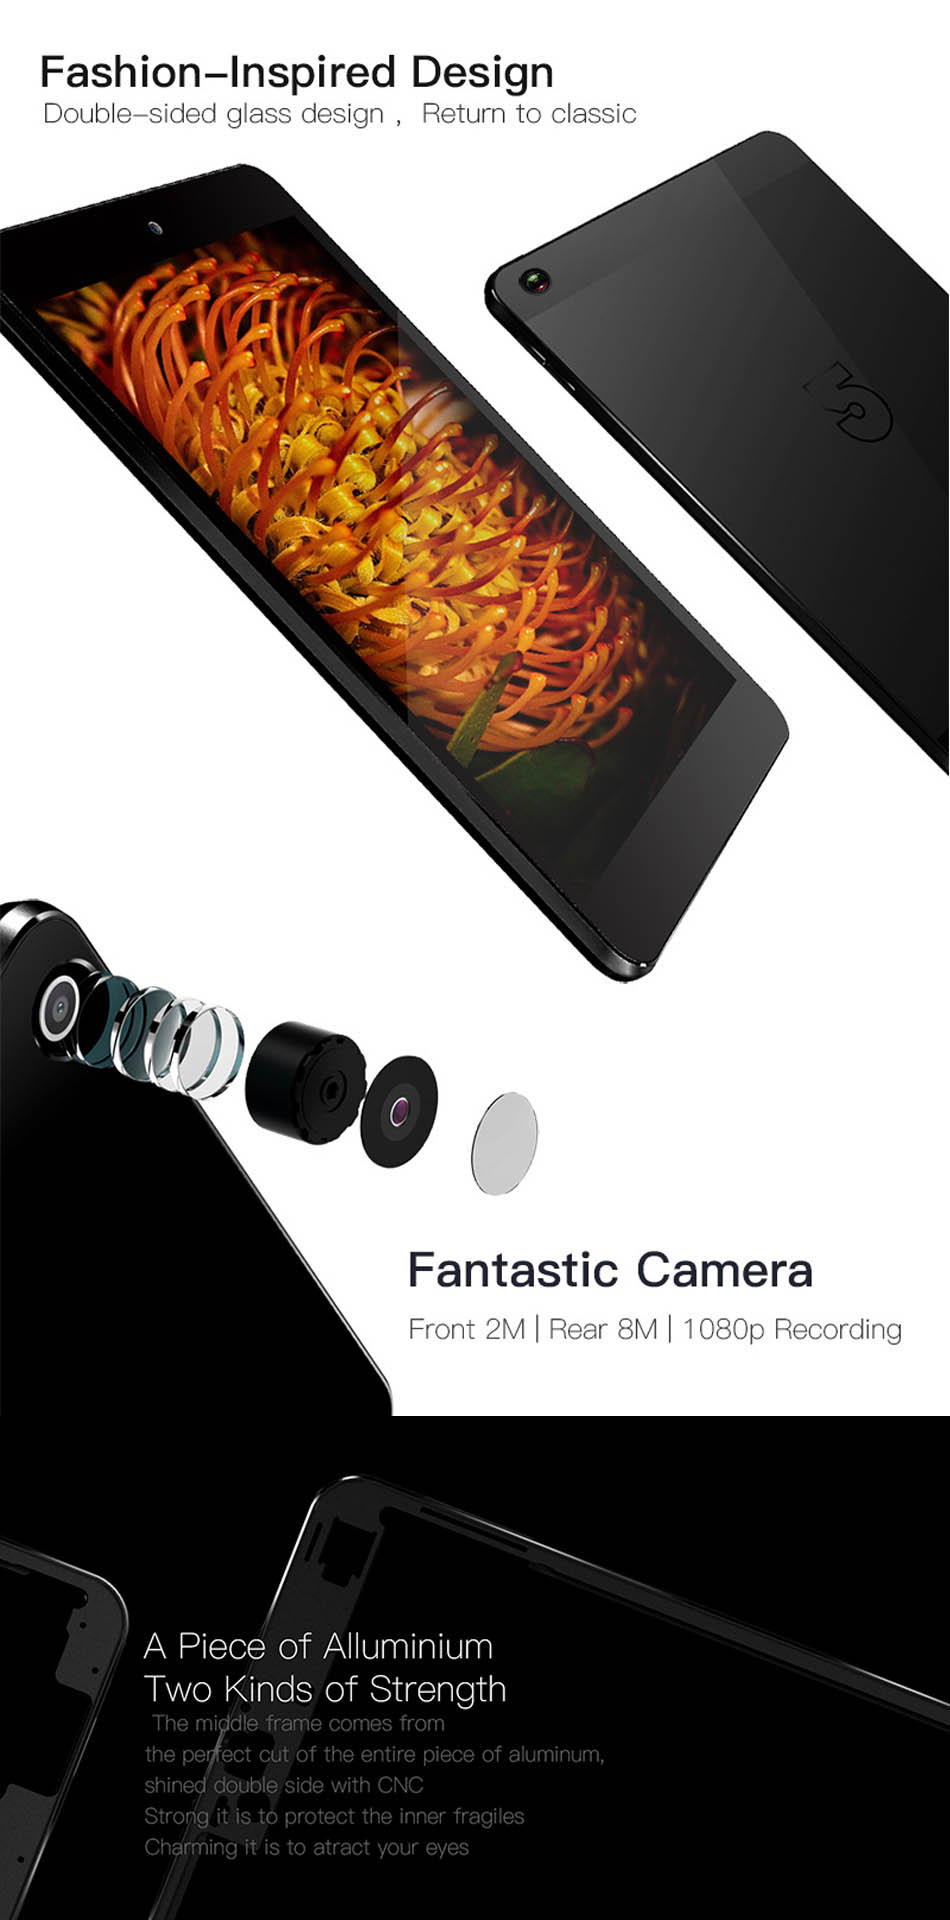 Четырехъядерный 7.9-дюймовый Android 6.0 планшет FNF Ifive Mini 4S оригинальная коробка RK3288 32g